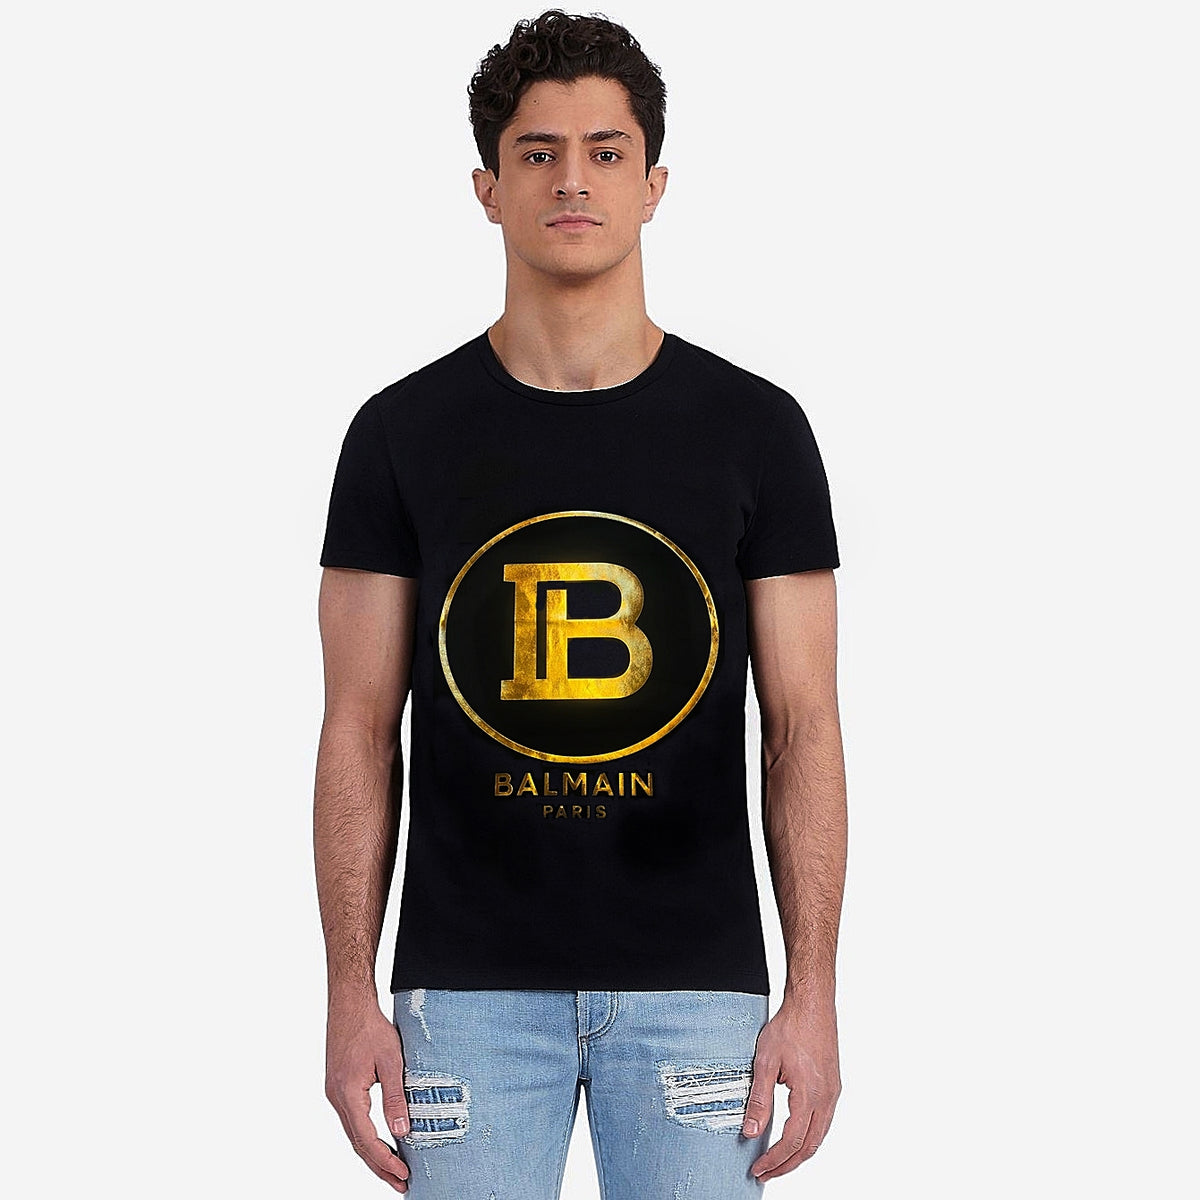 BLMN BF black printed T-Shirt (00244)